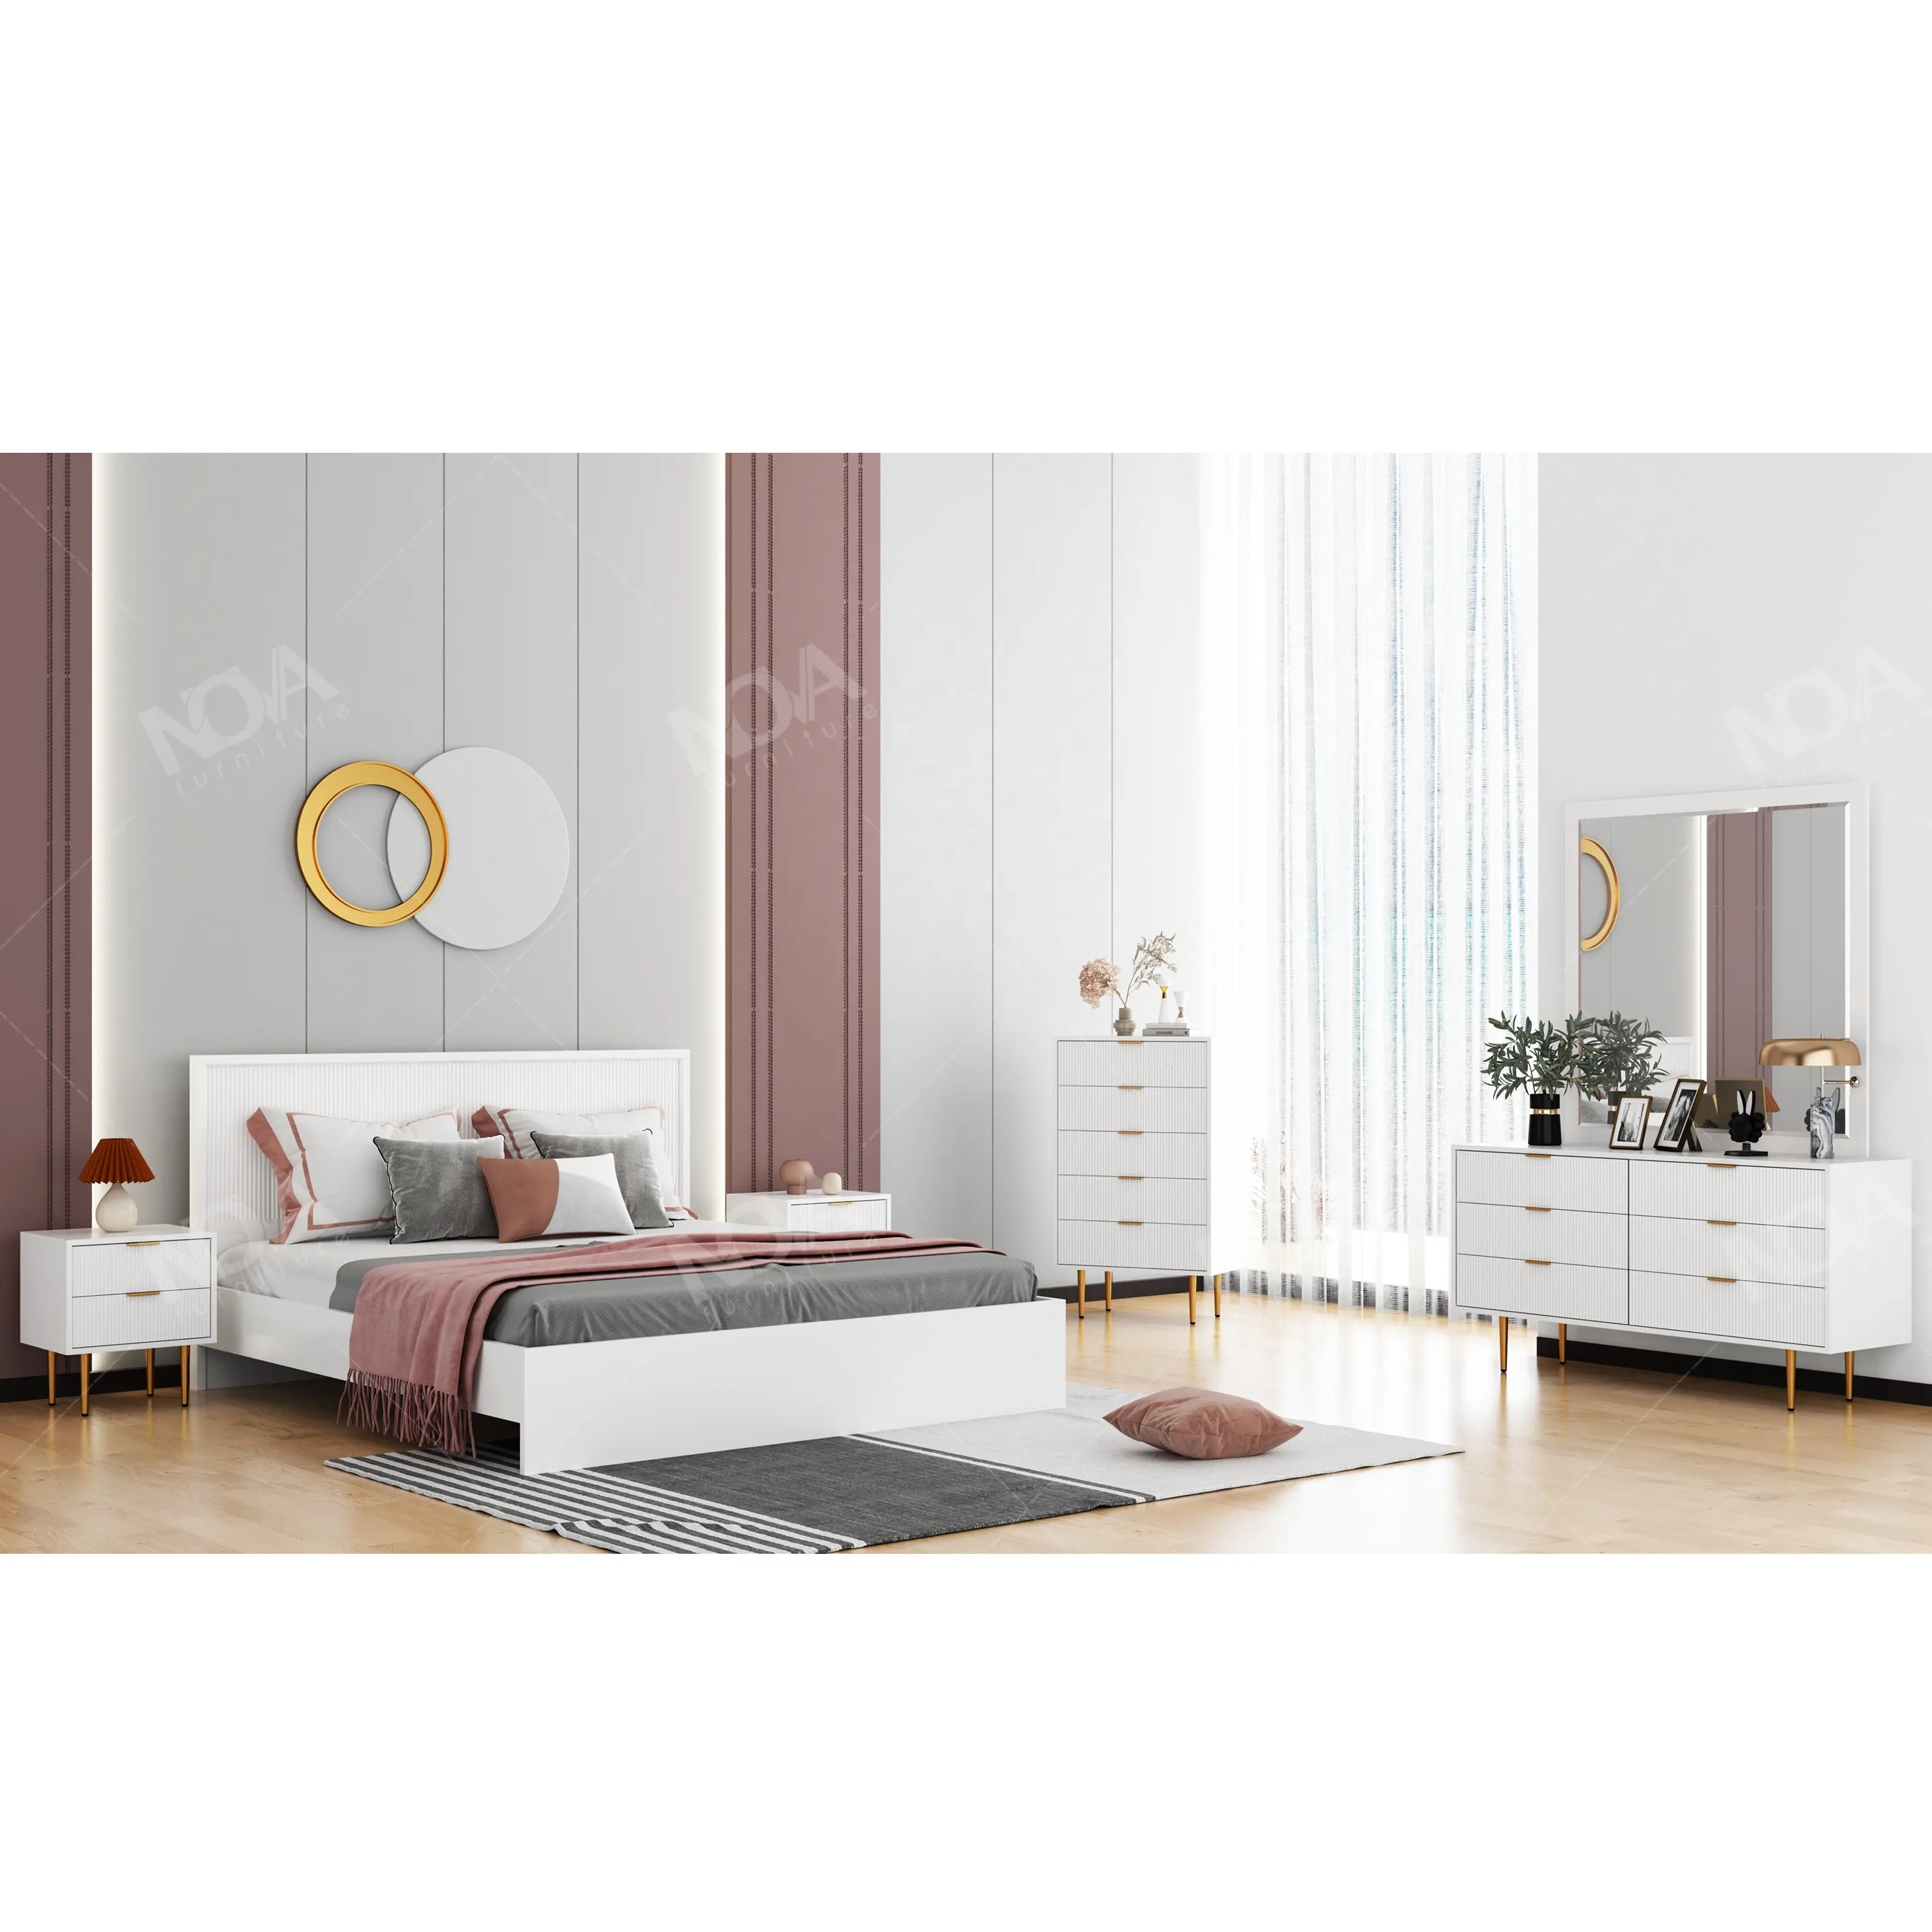 أثاث غرفة نوم NOVA للكبار من خشب متين أبيض حجم كبير سرير بإطار بتصميم حديث من ألواح مخددة مجموعات أثاث مزدوج سرير مزدوج